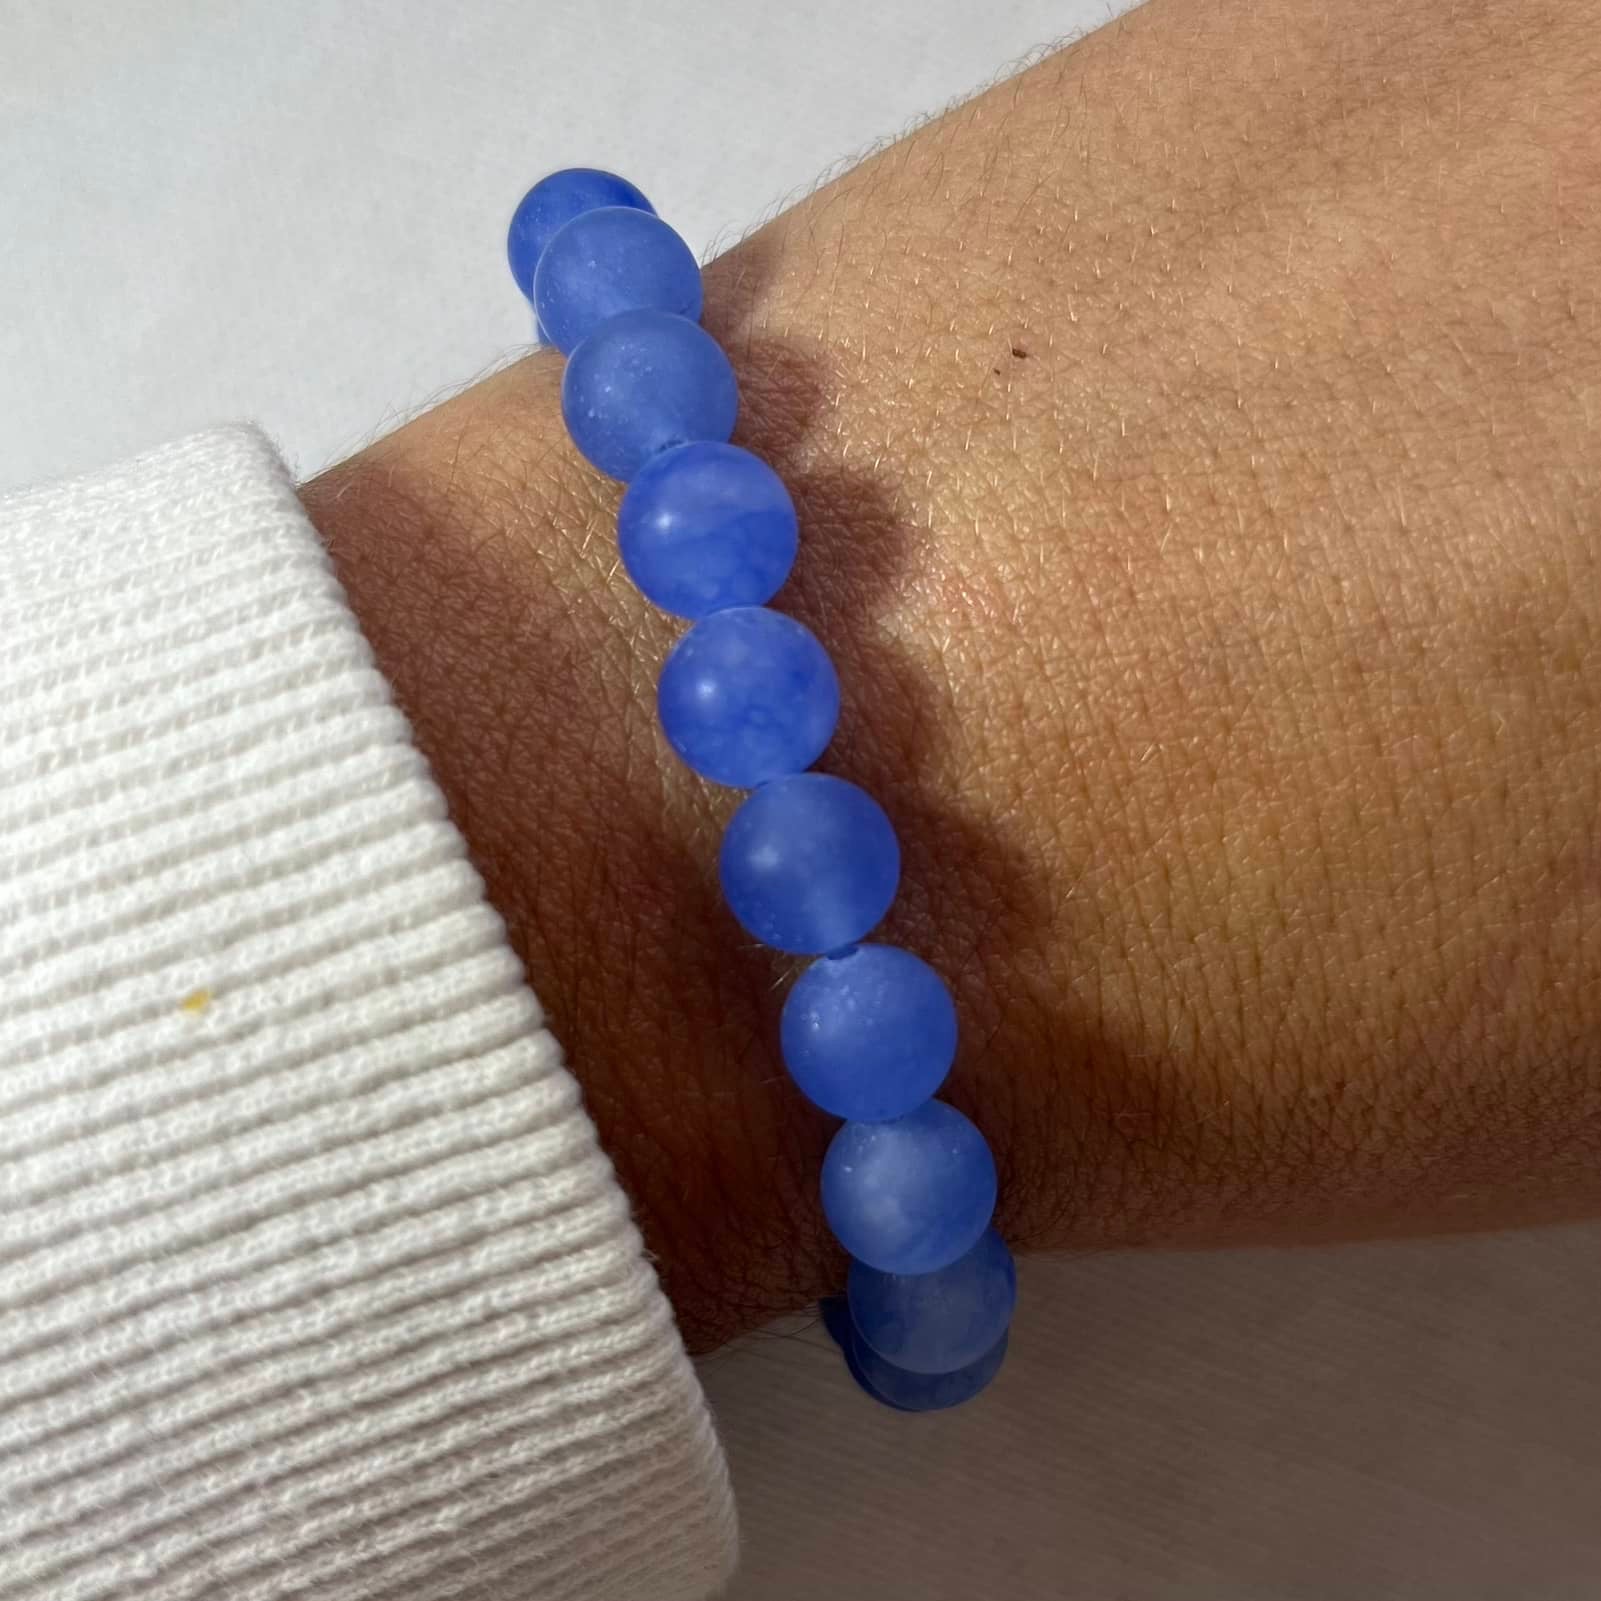 Blue Jade Bracelet - Lithos Crystals